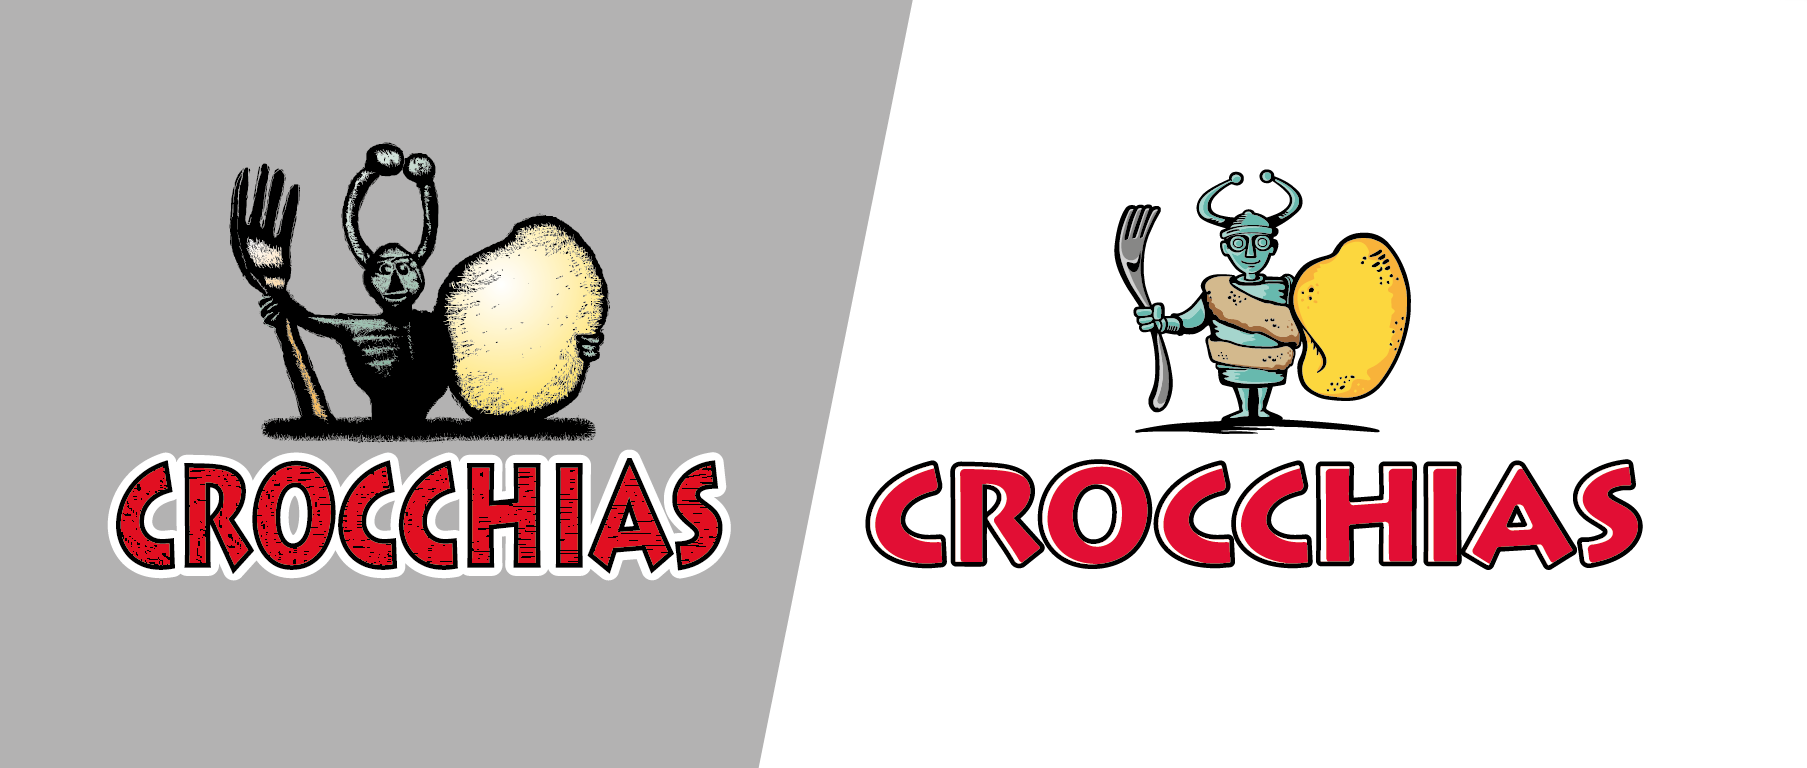 Crocchias_Crocchias